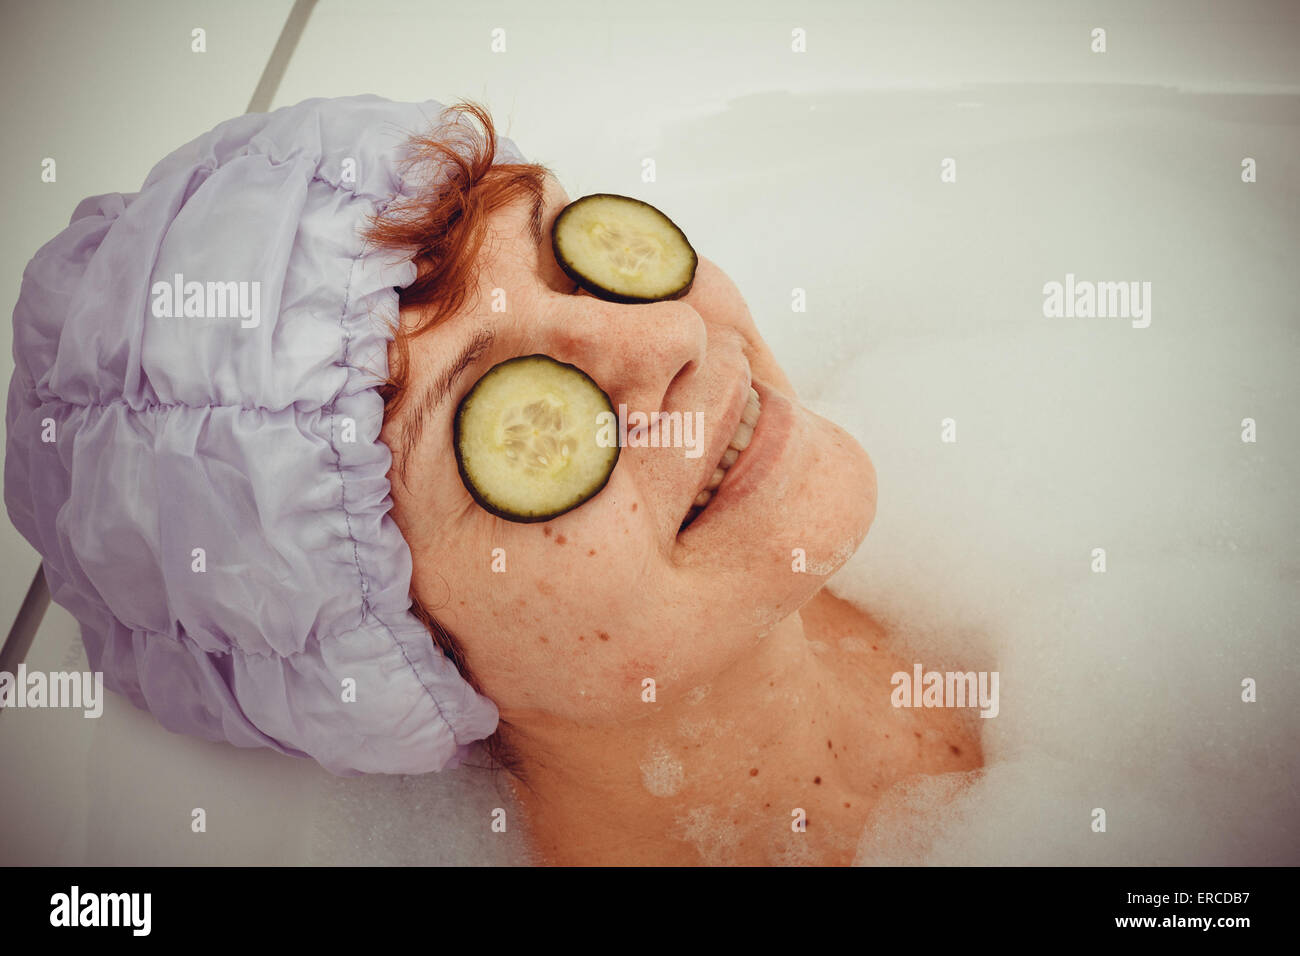 Reife Frau in der Badewanne mit Gurkenscheiben auf Spektakel, Retro-Stil Stockfoto